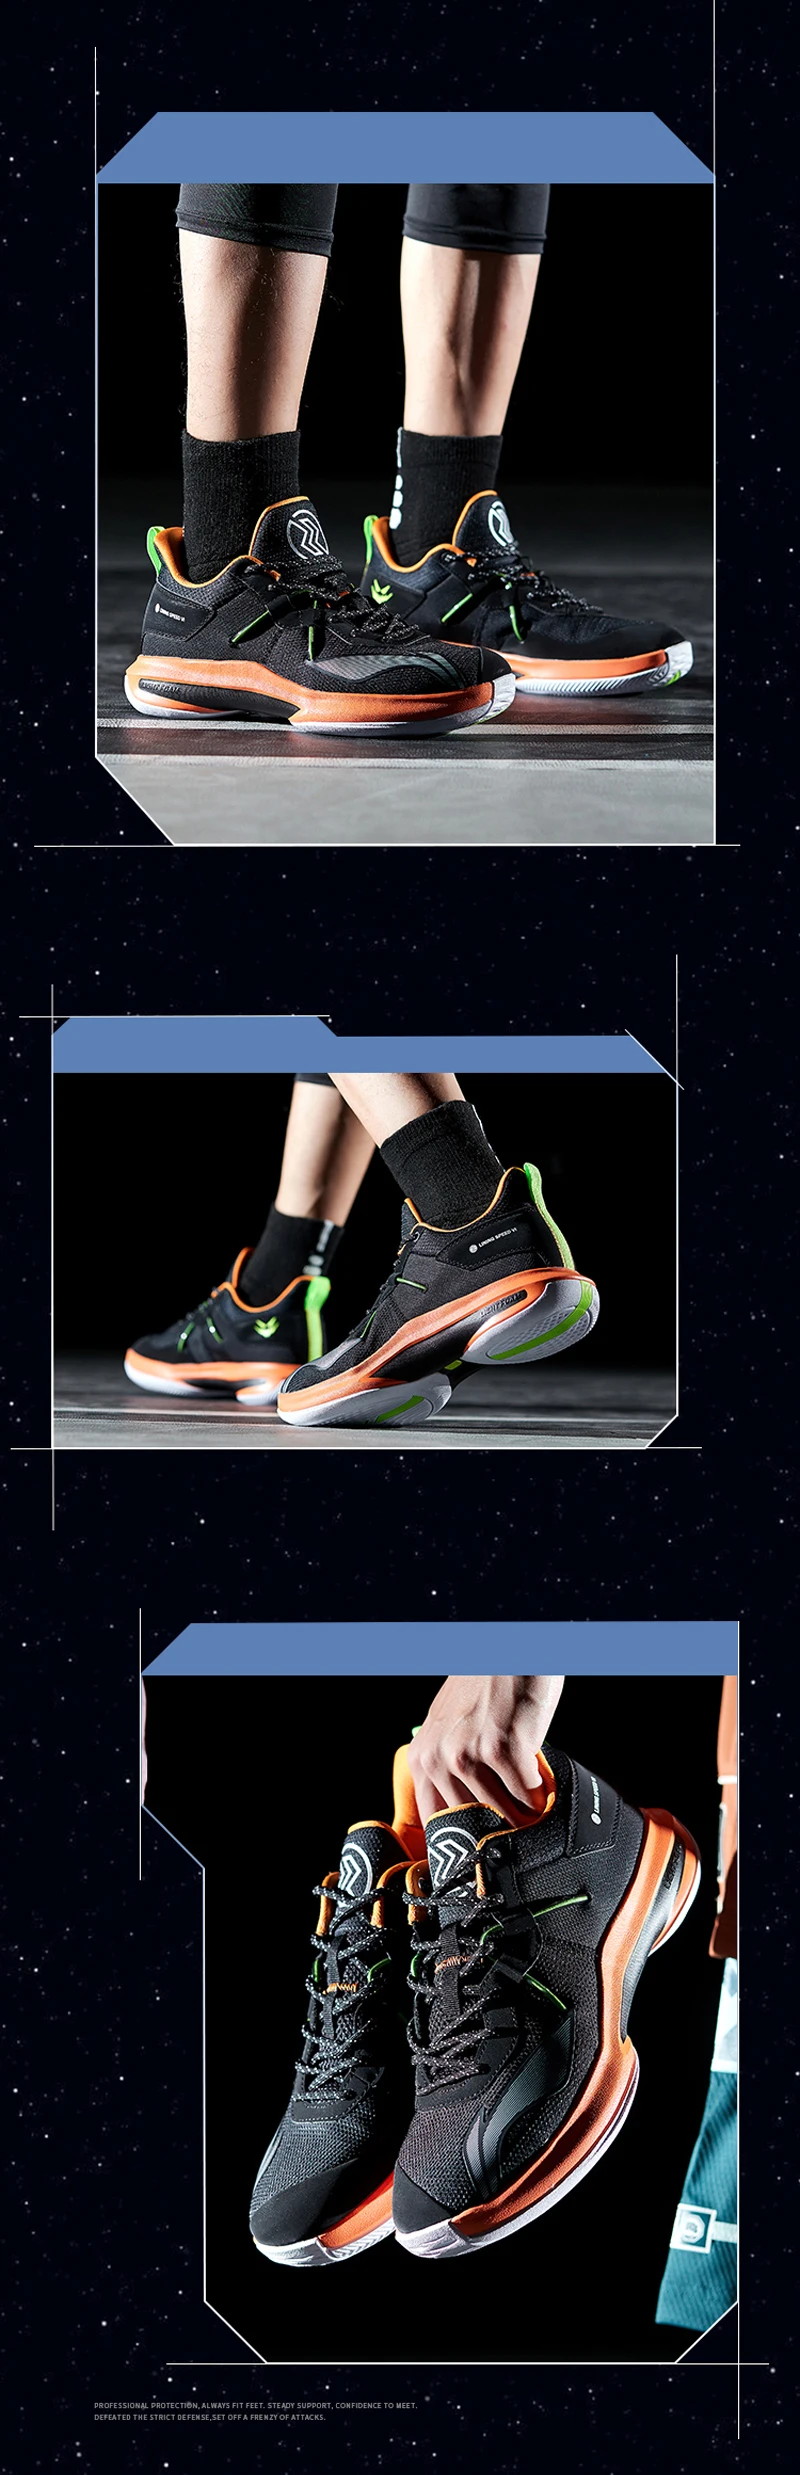 Li-Ning Для мужчин Скорость VI Профессиональная баскетбольная обувь светильник подушка из пены с эффектом подкладка Спортивная обувь Кроссовки ABAP069 XYL292